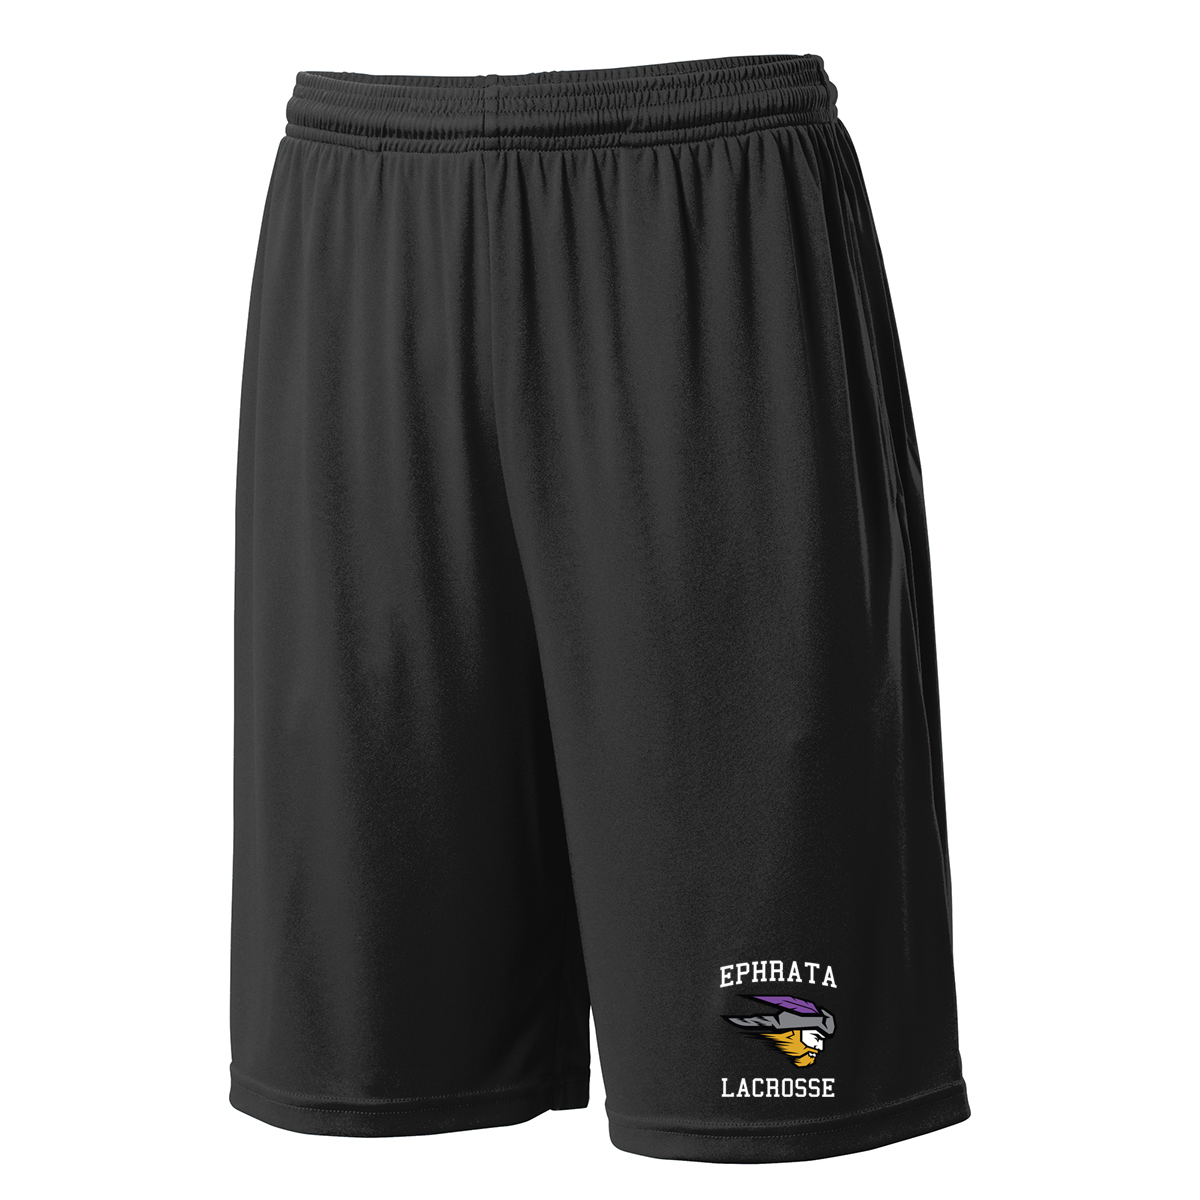 Ephrata Lacrosse Shorts